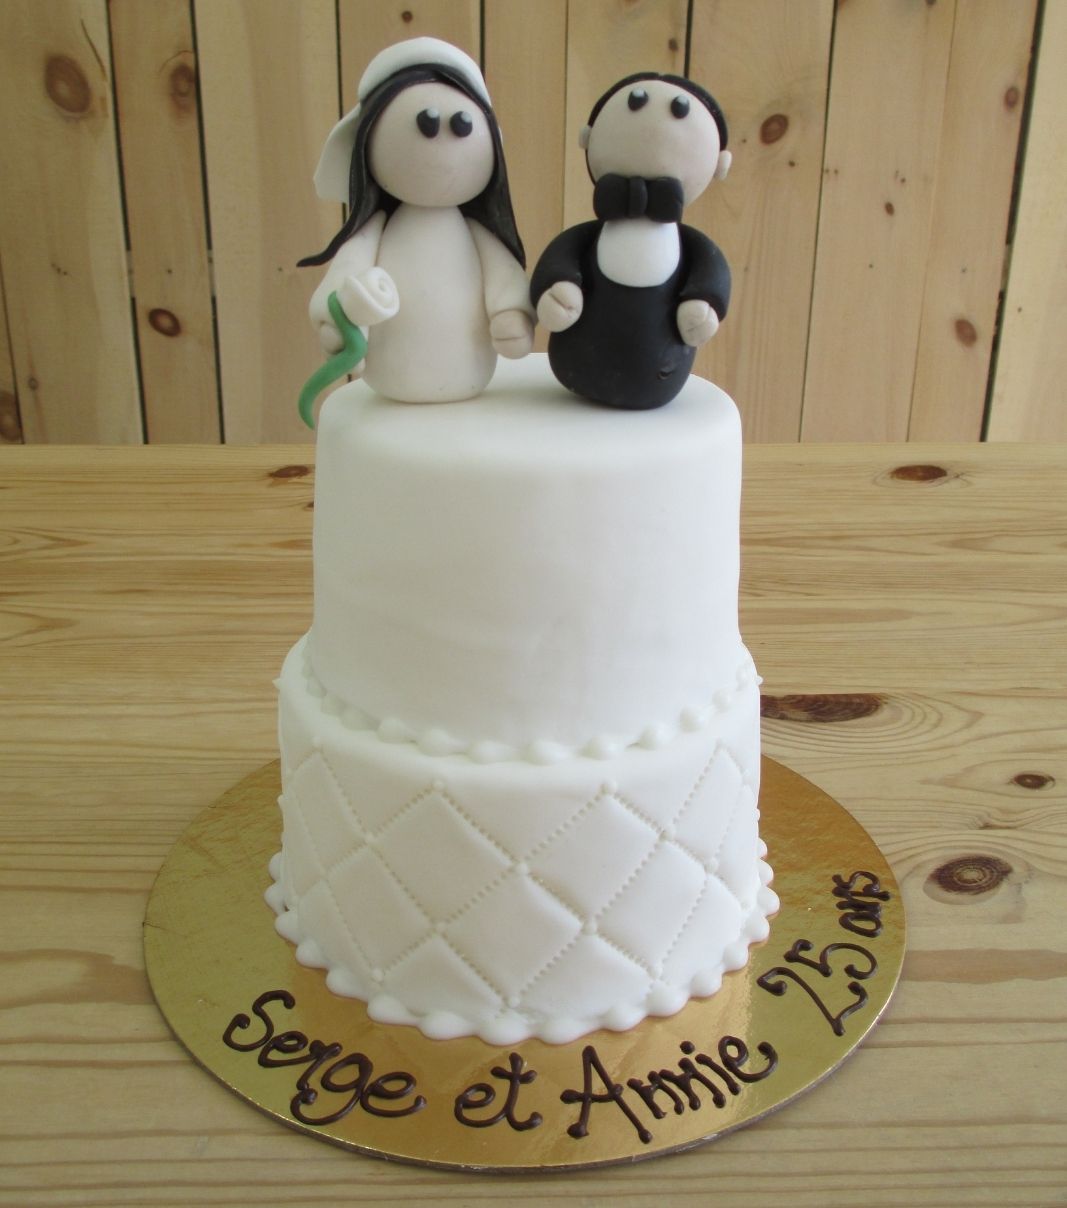 Gâteau d'anniversaire de mariage des 25 ans de Serge et Annie: petit gâteau de 2 étages avec une couverture au fondant blanc et décoré de figurines de mariés simples en fondant sculptées à la main.